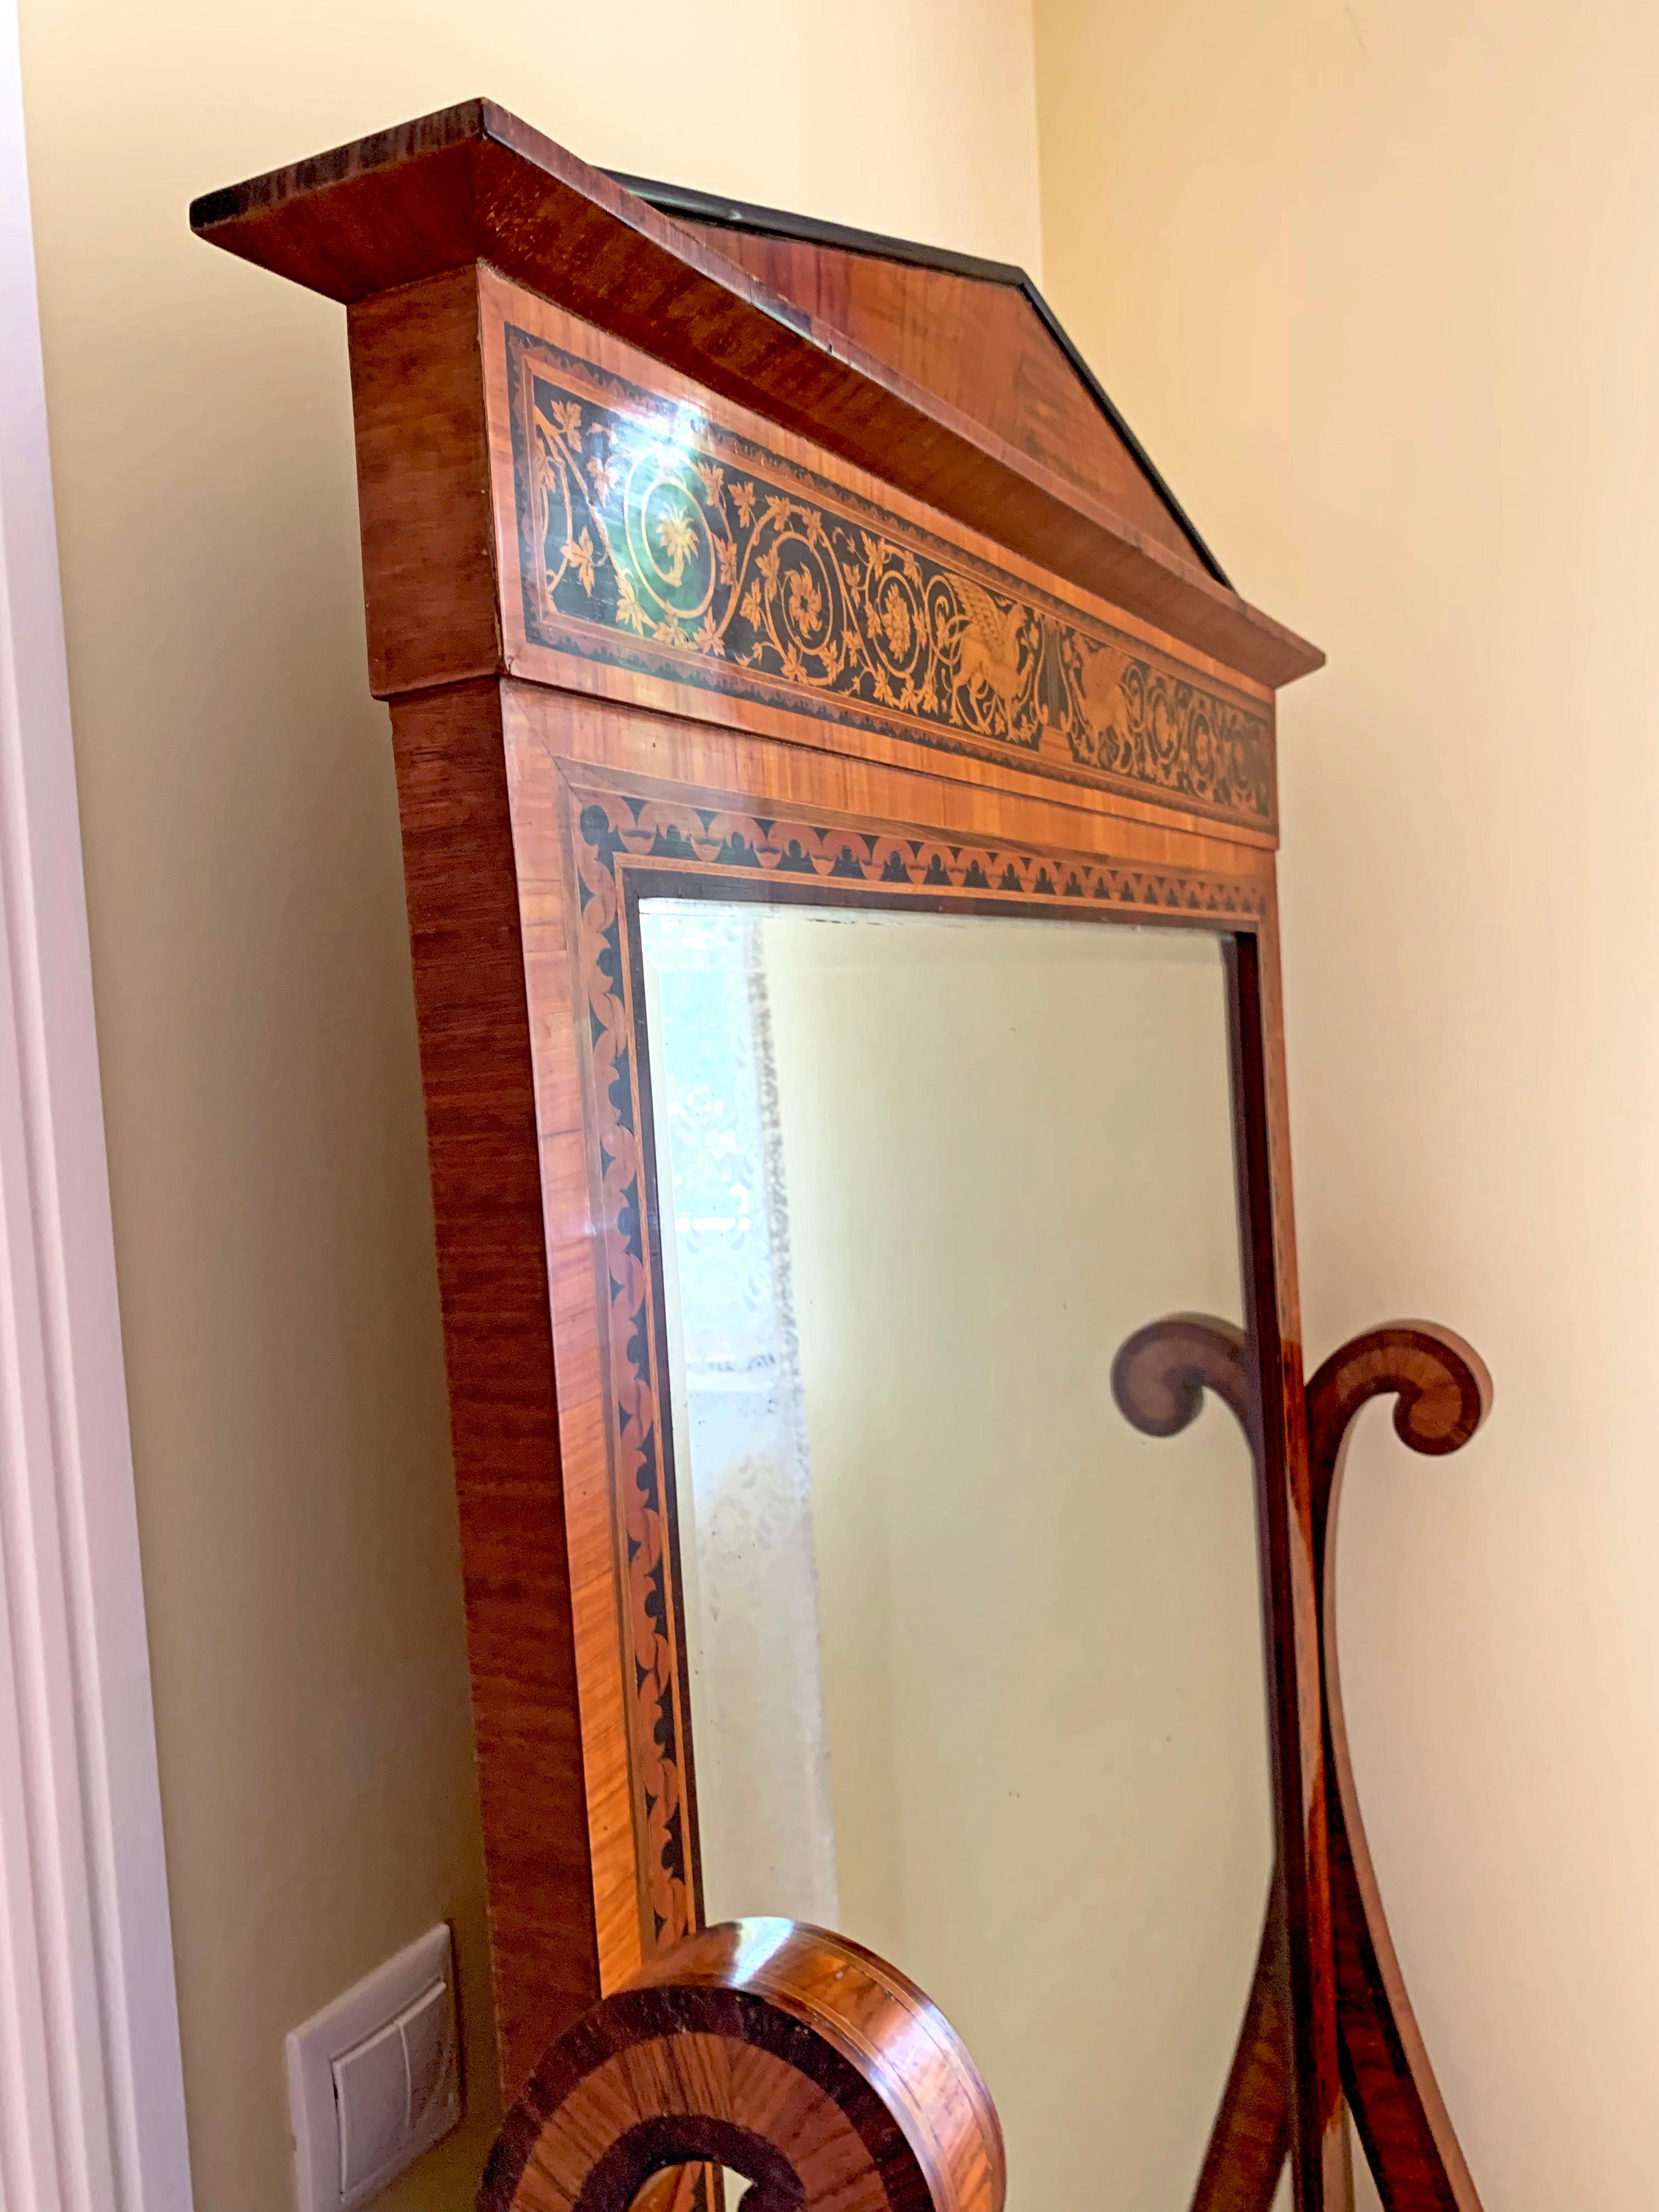 Magnifique miroir sur pied en bois de rose de la fin du XIXe siècle, avec marqueterie en bois noir. L'angle du miroir est modifiable et peut être fixé sur le côté. Les détails de la marqueterie témoignent d'un magnifique savoir-faire artisanal. Les